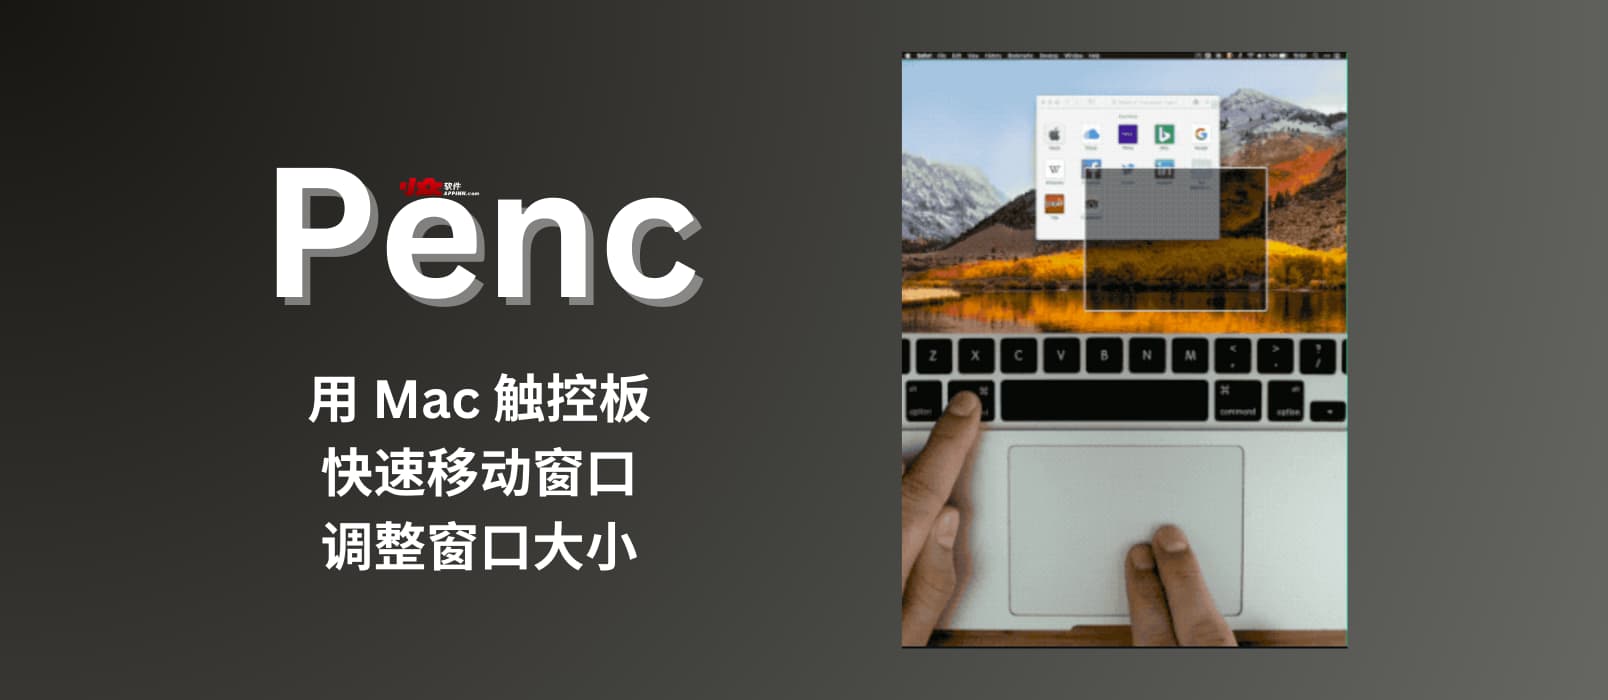 Penc - 用 Mac 触控板快速移动窗口、调整窗口大小